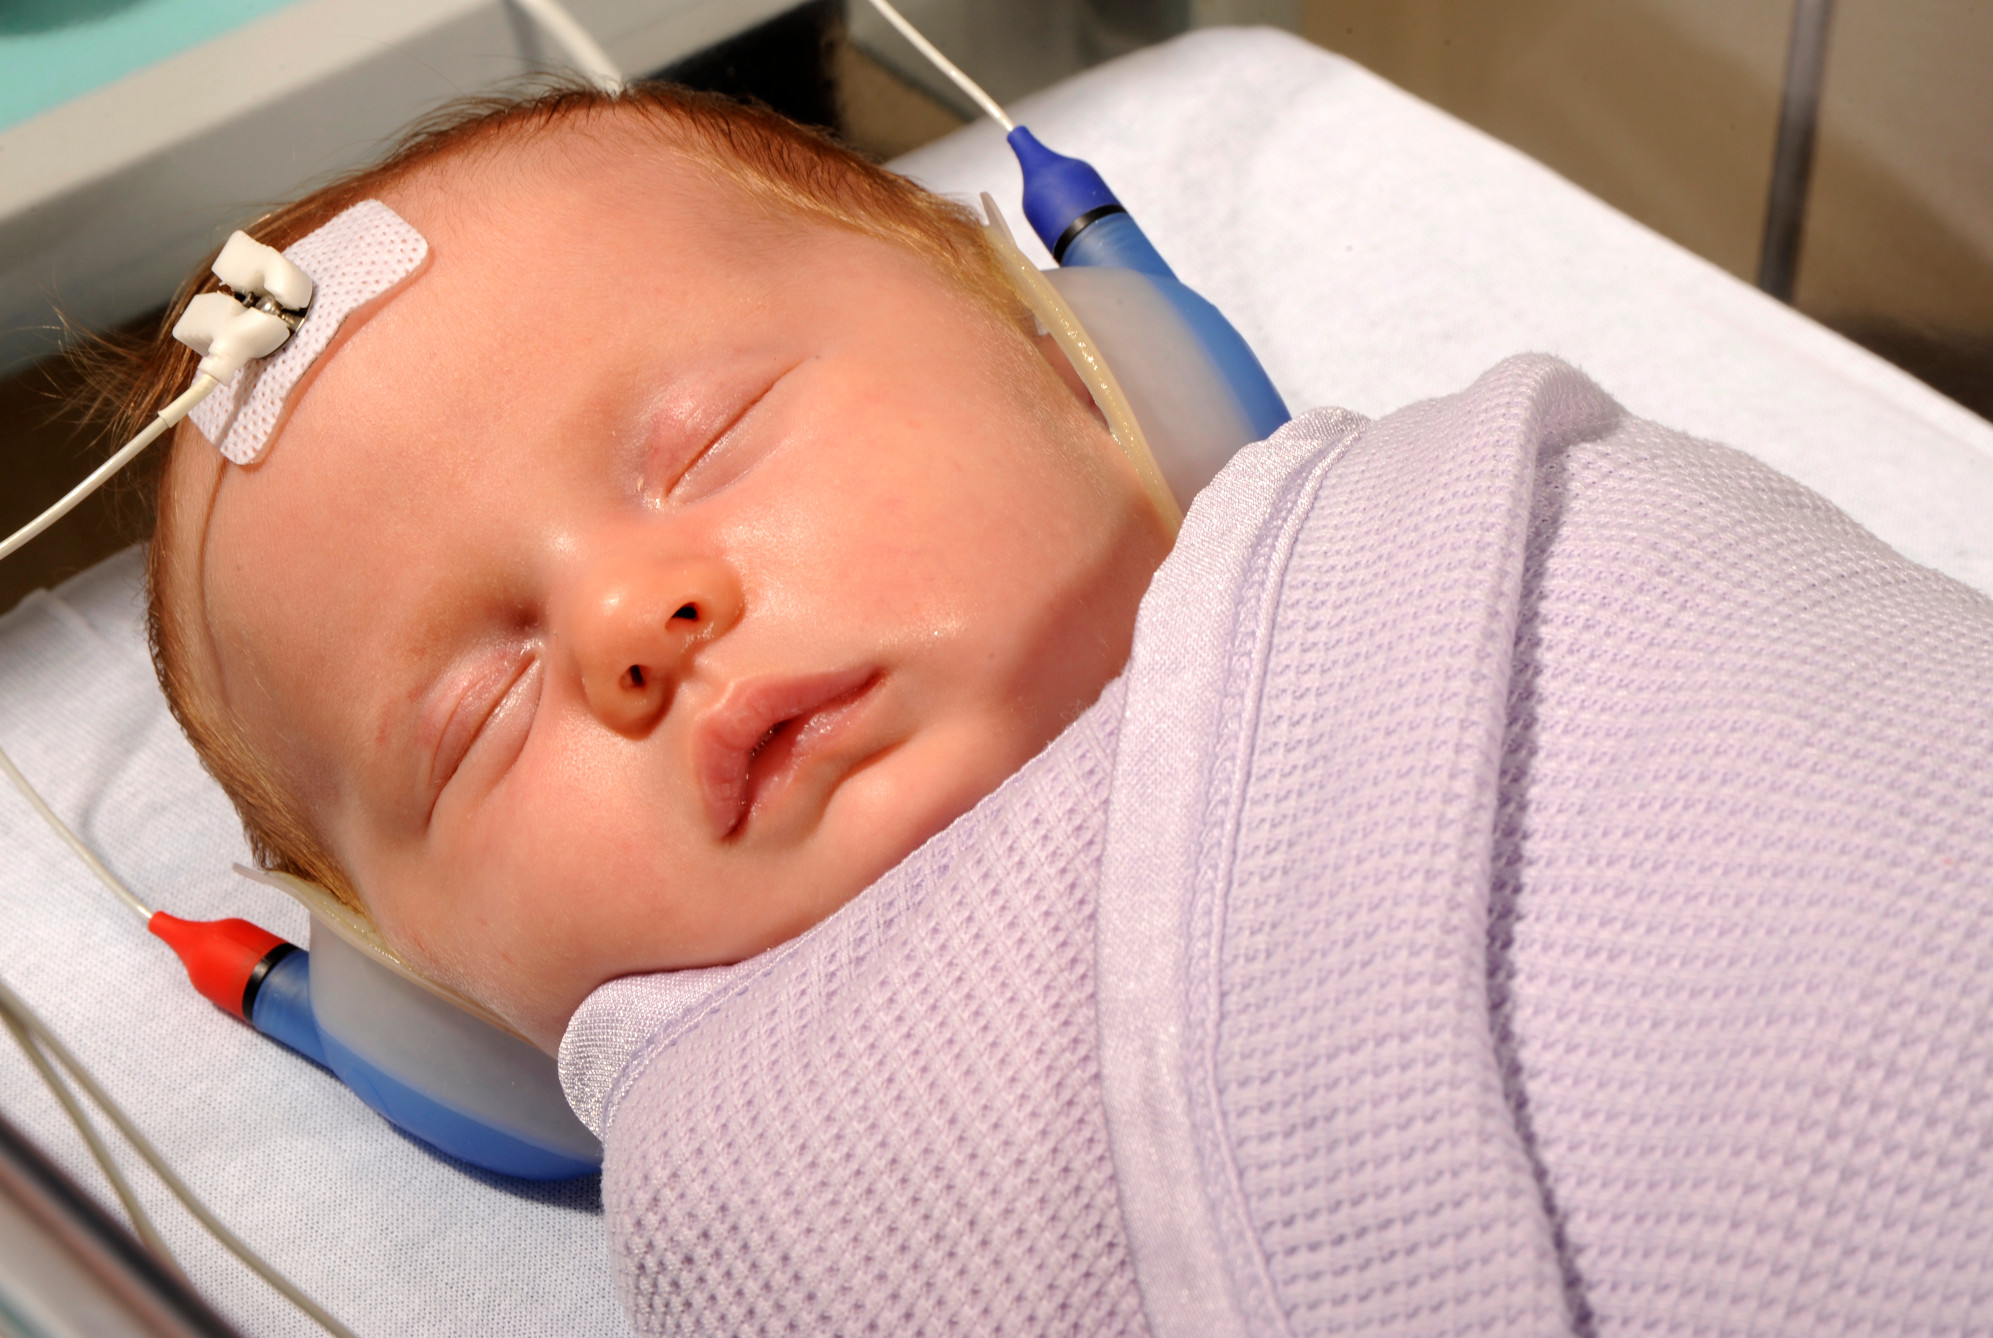 7 years of newborn hearing screening data